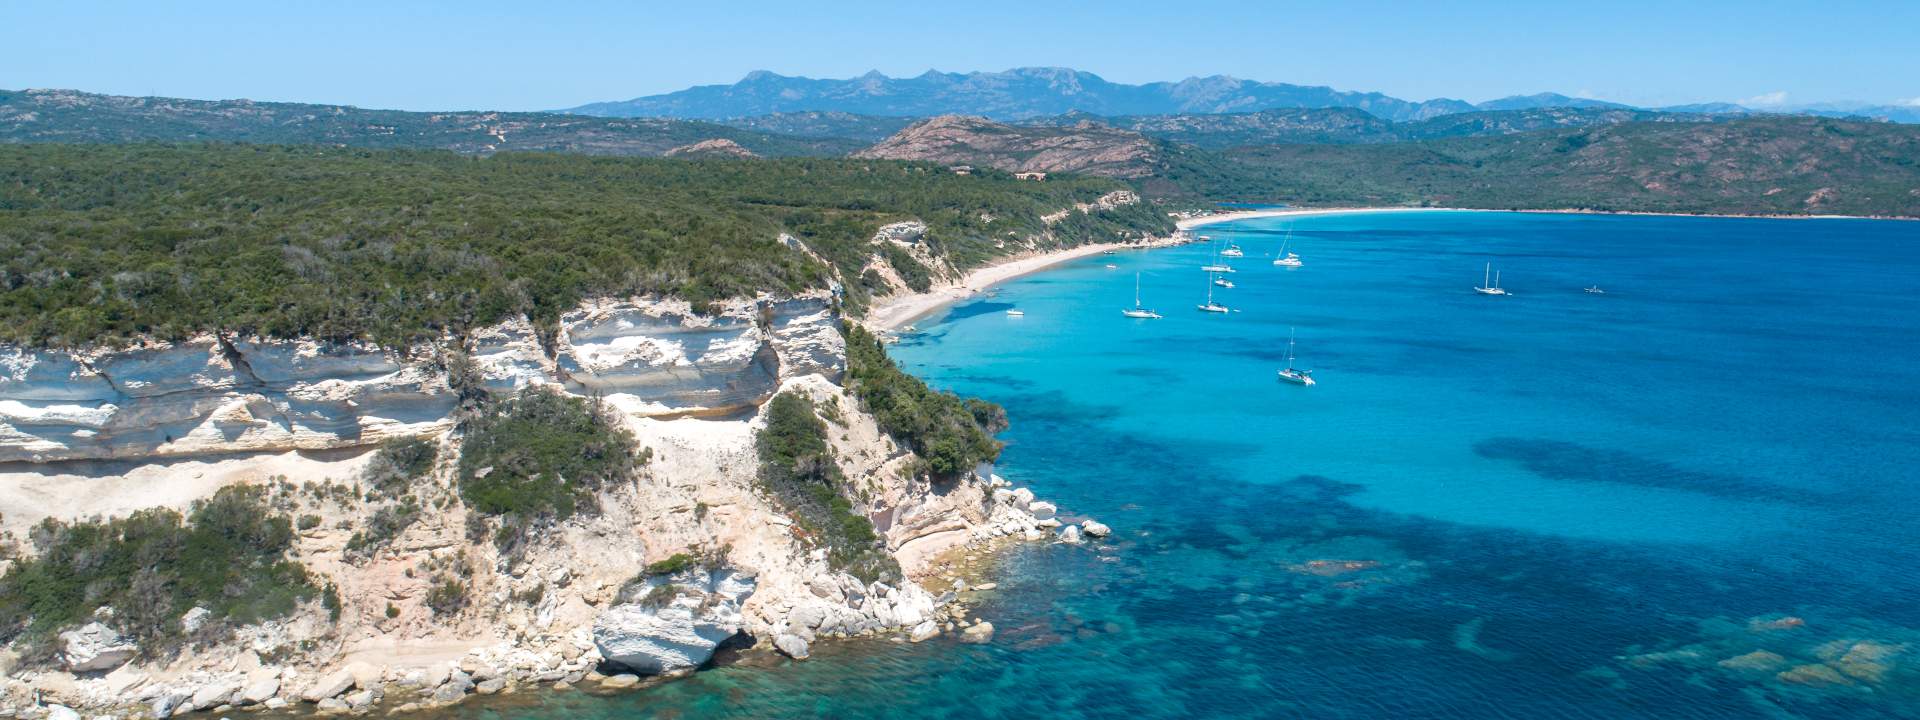 Посетите самое красивое побережье Сардинии: Коста Смеральда